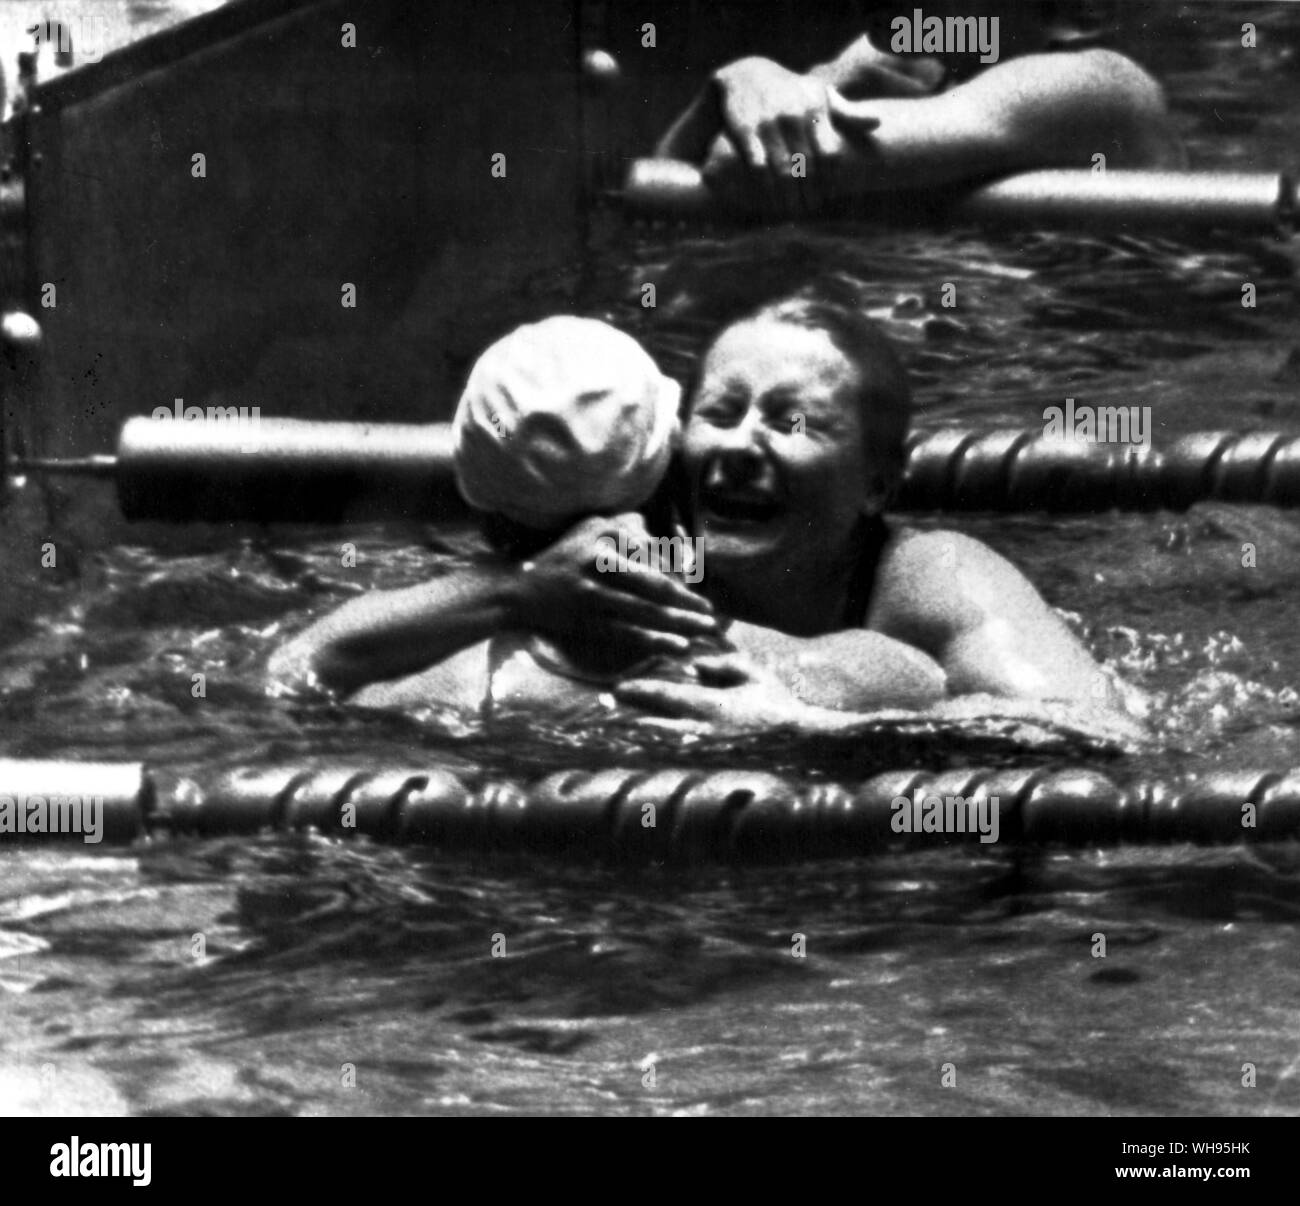 Le Japon, Tokyo Jeux Olympiques, 1964 : Galina Prozumenschikova (URSS) face caméra, étreignant un concurrent après avoir remporté le 200m brasse en finale un nouveau record olympique de 2:64,4 . Banque D'Images